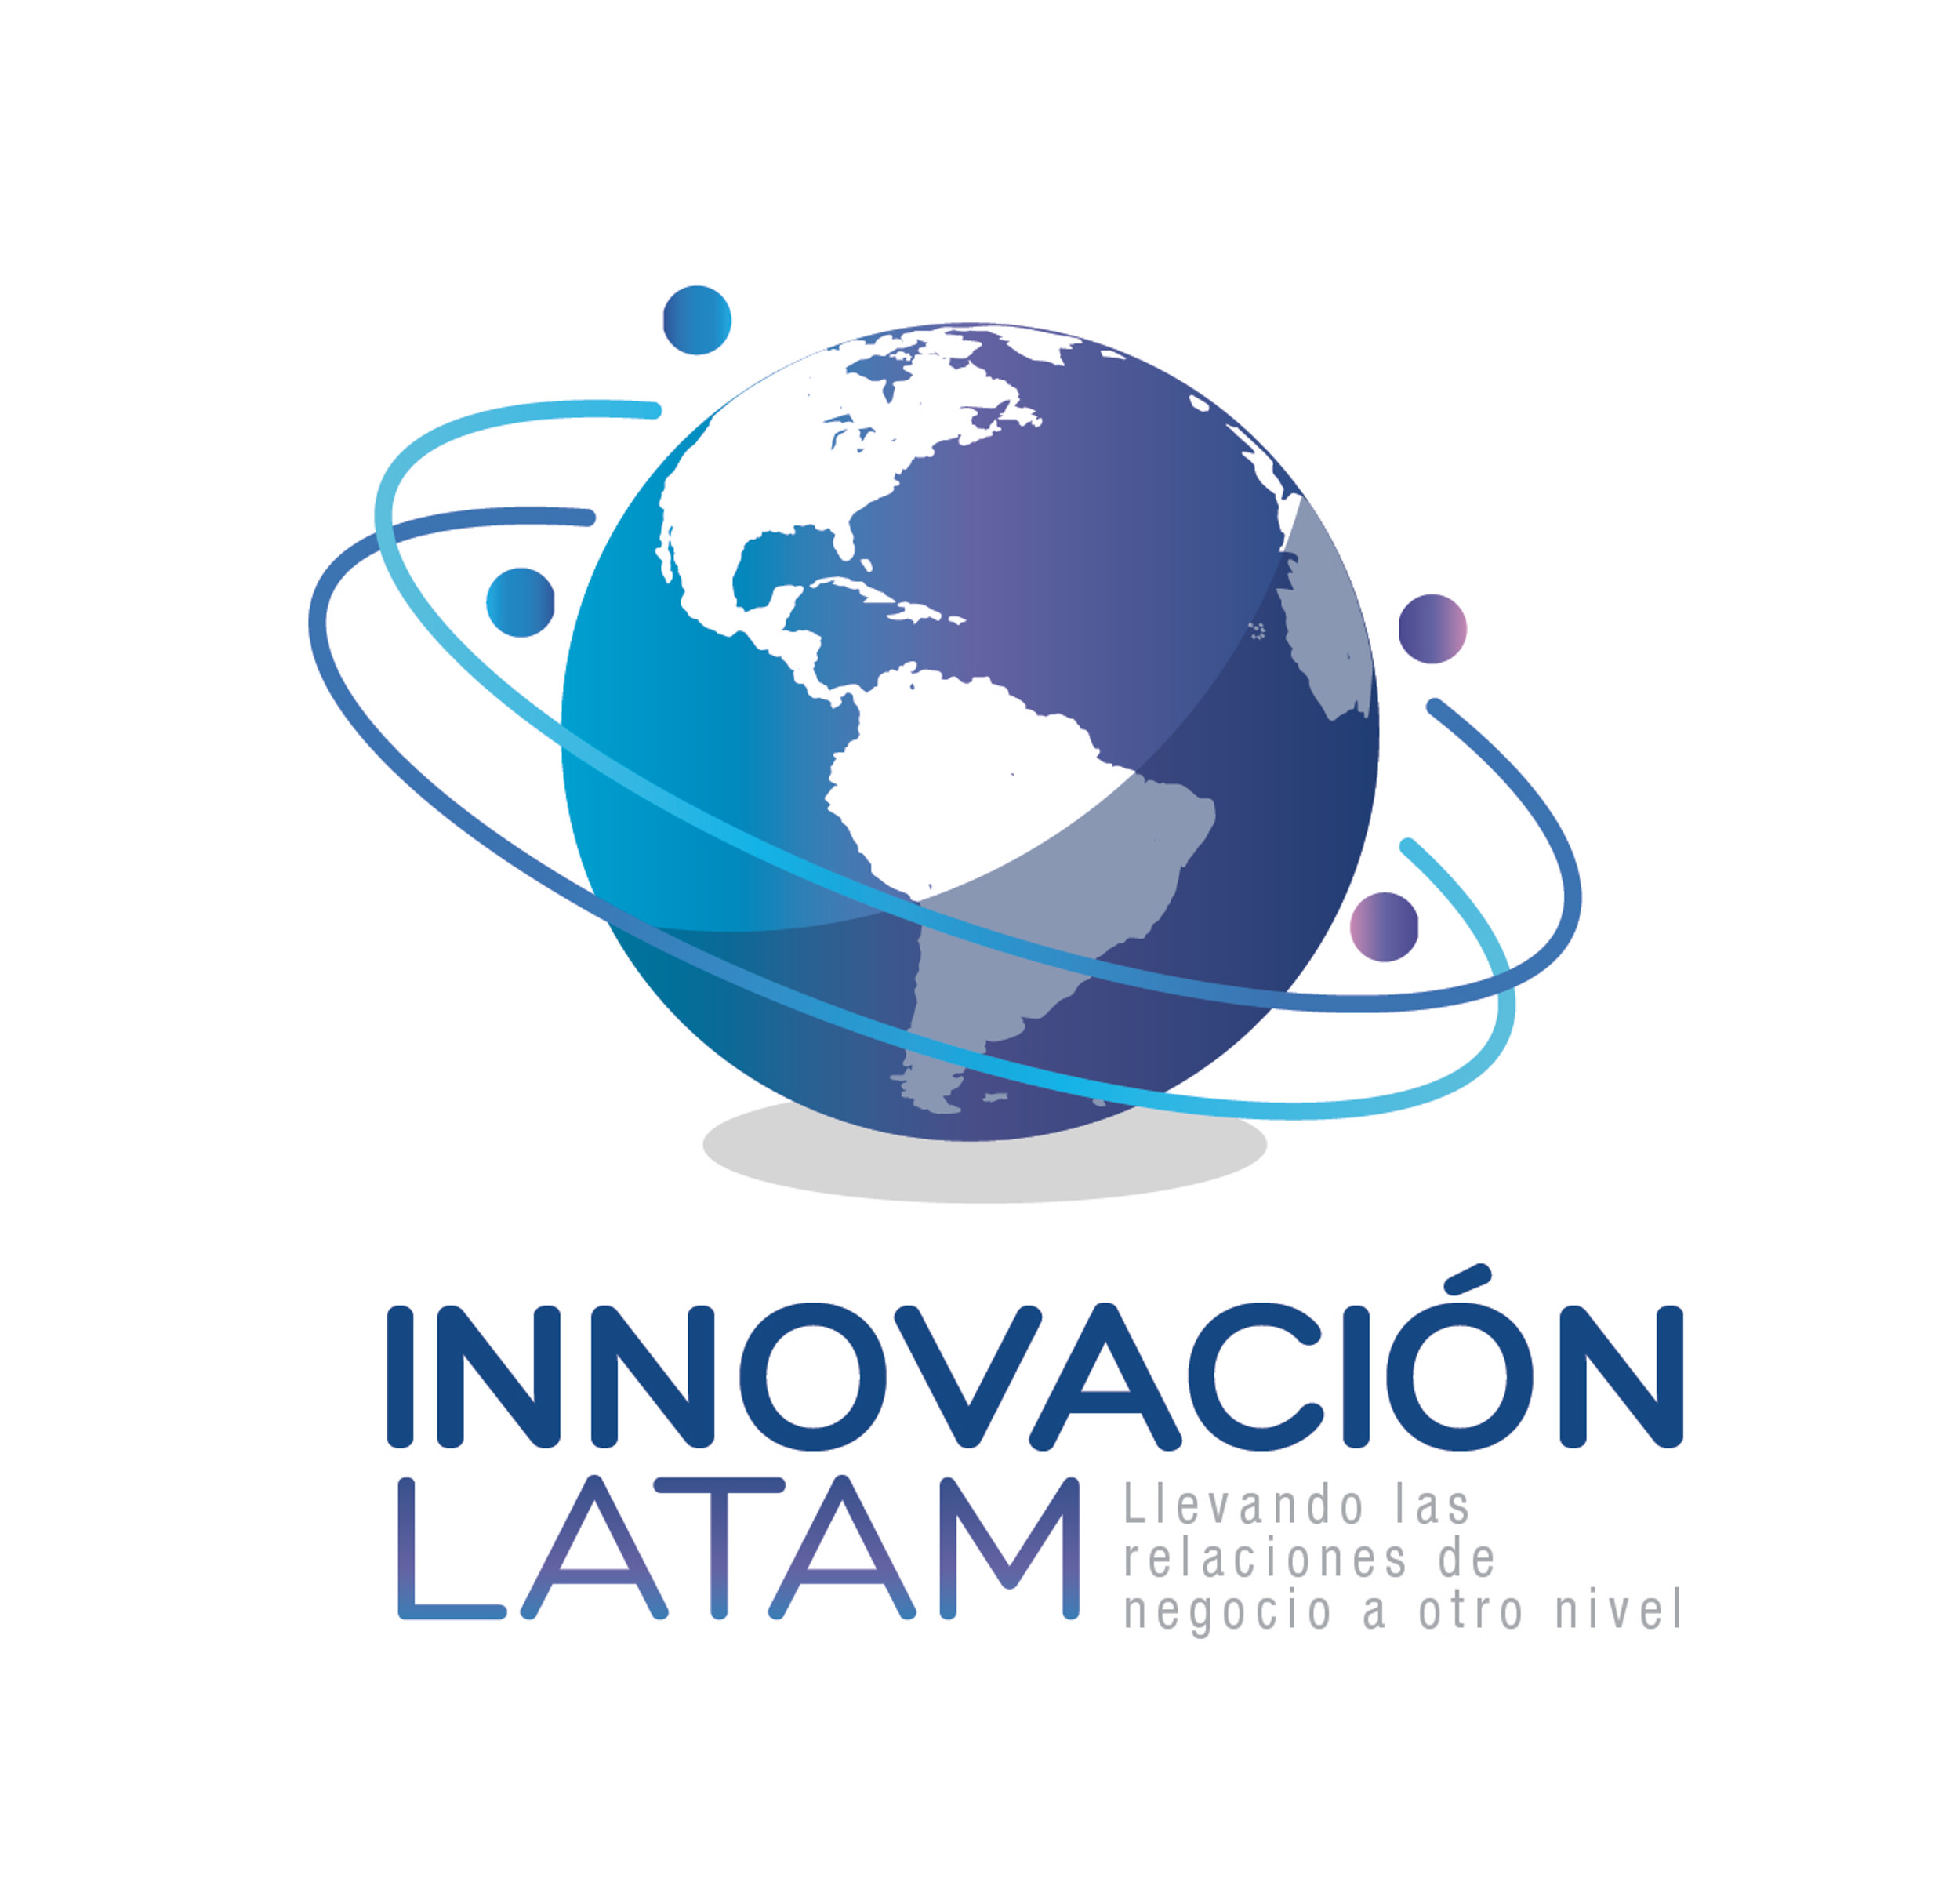 inovation latam logo